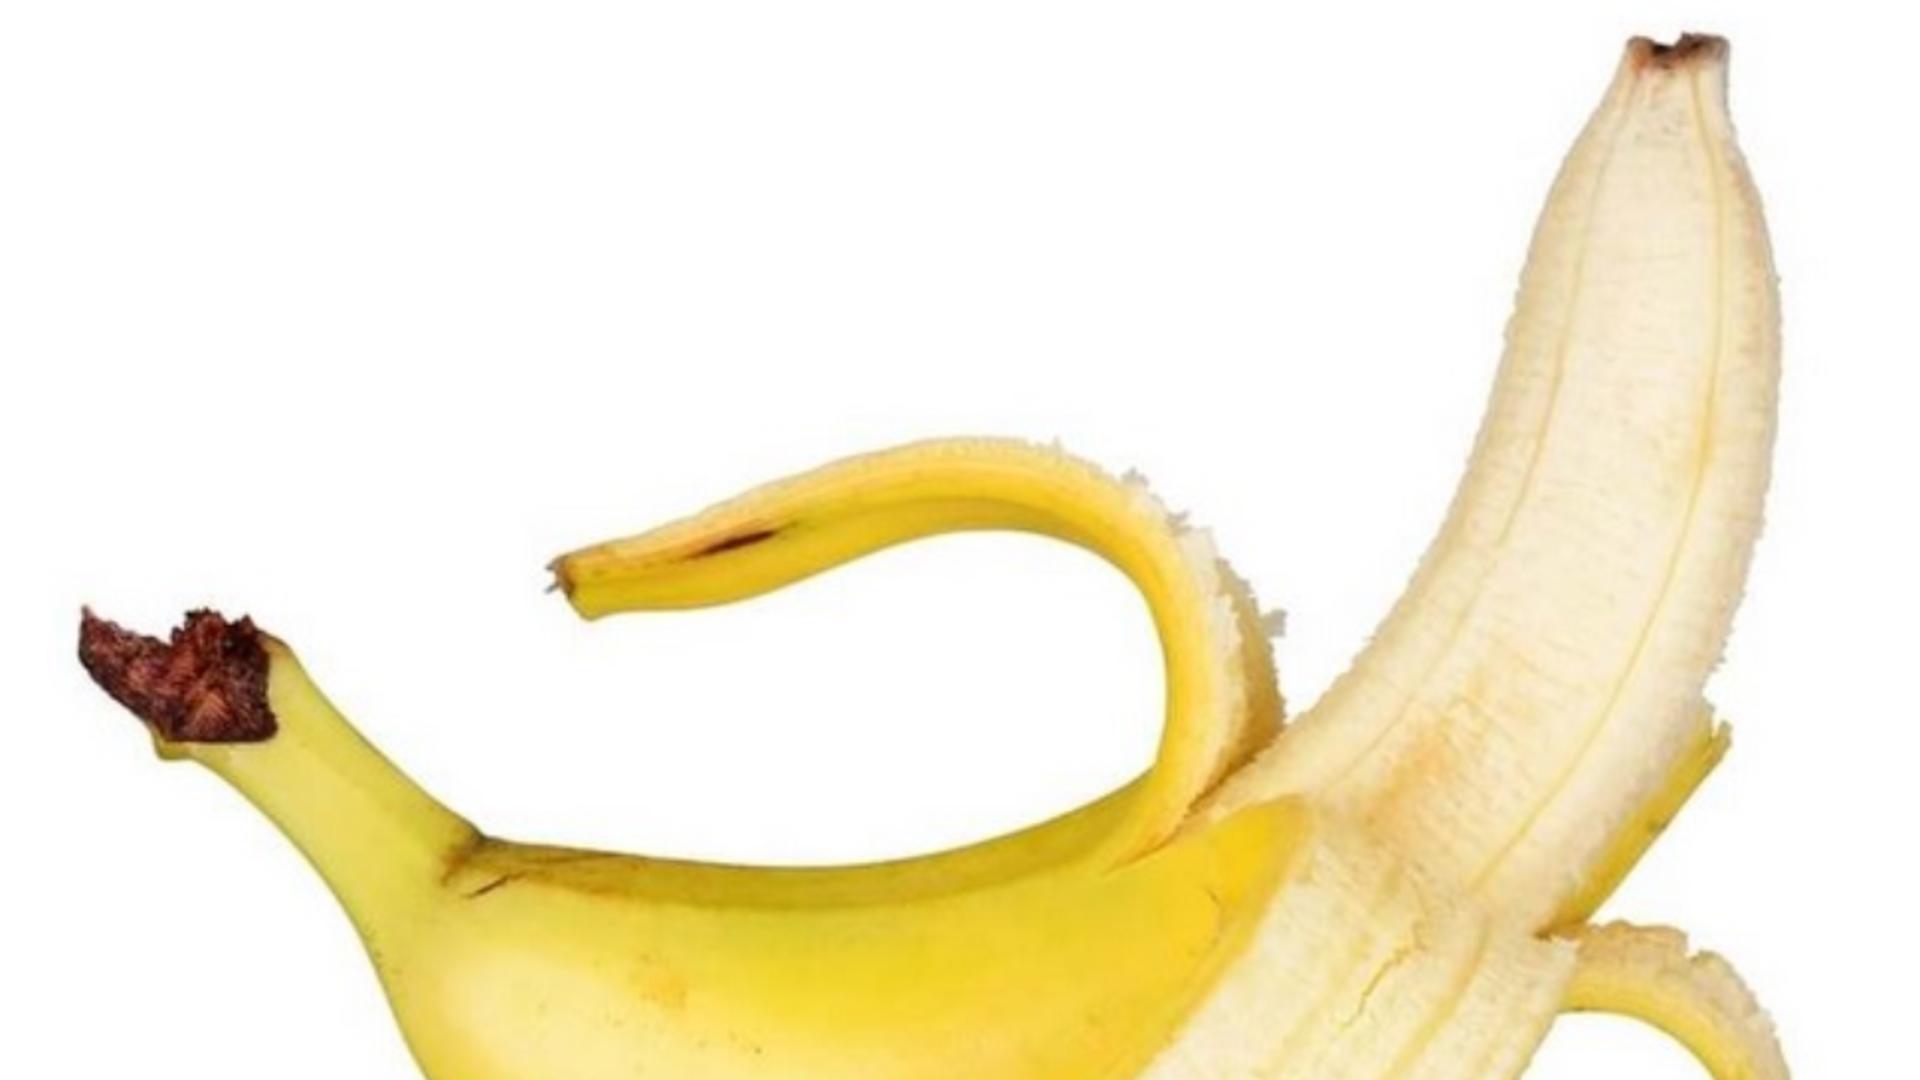 Tu mănânci vârful bananei? Uite la ce riscuri te expui